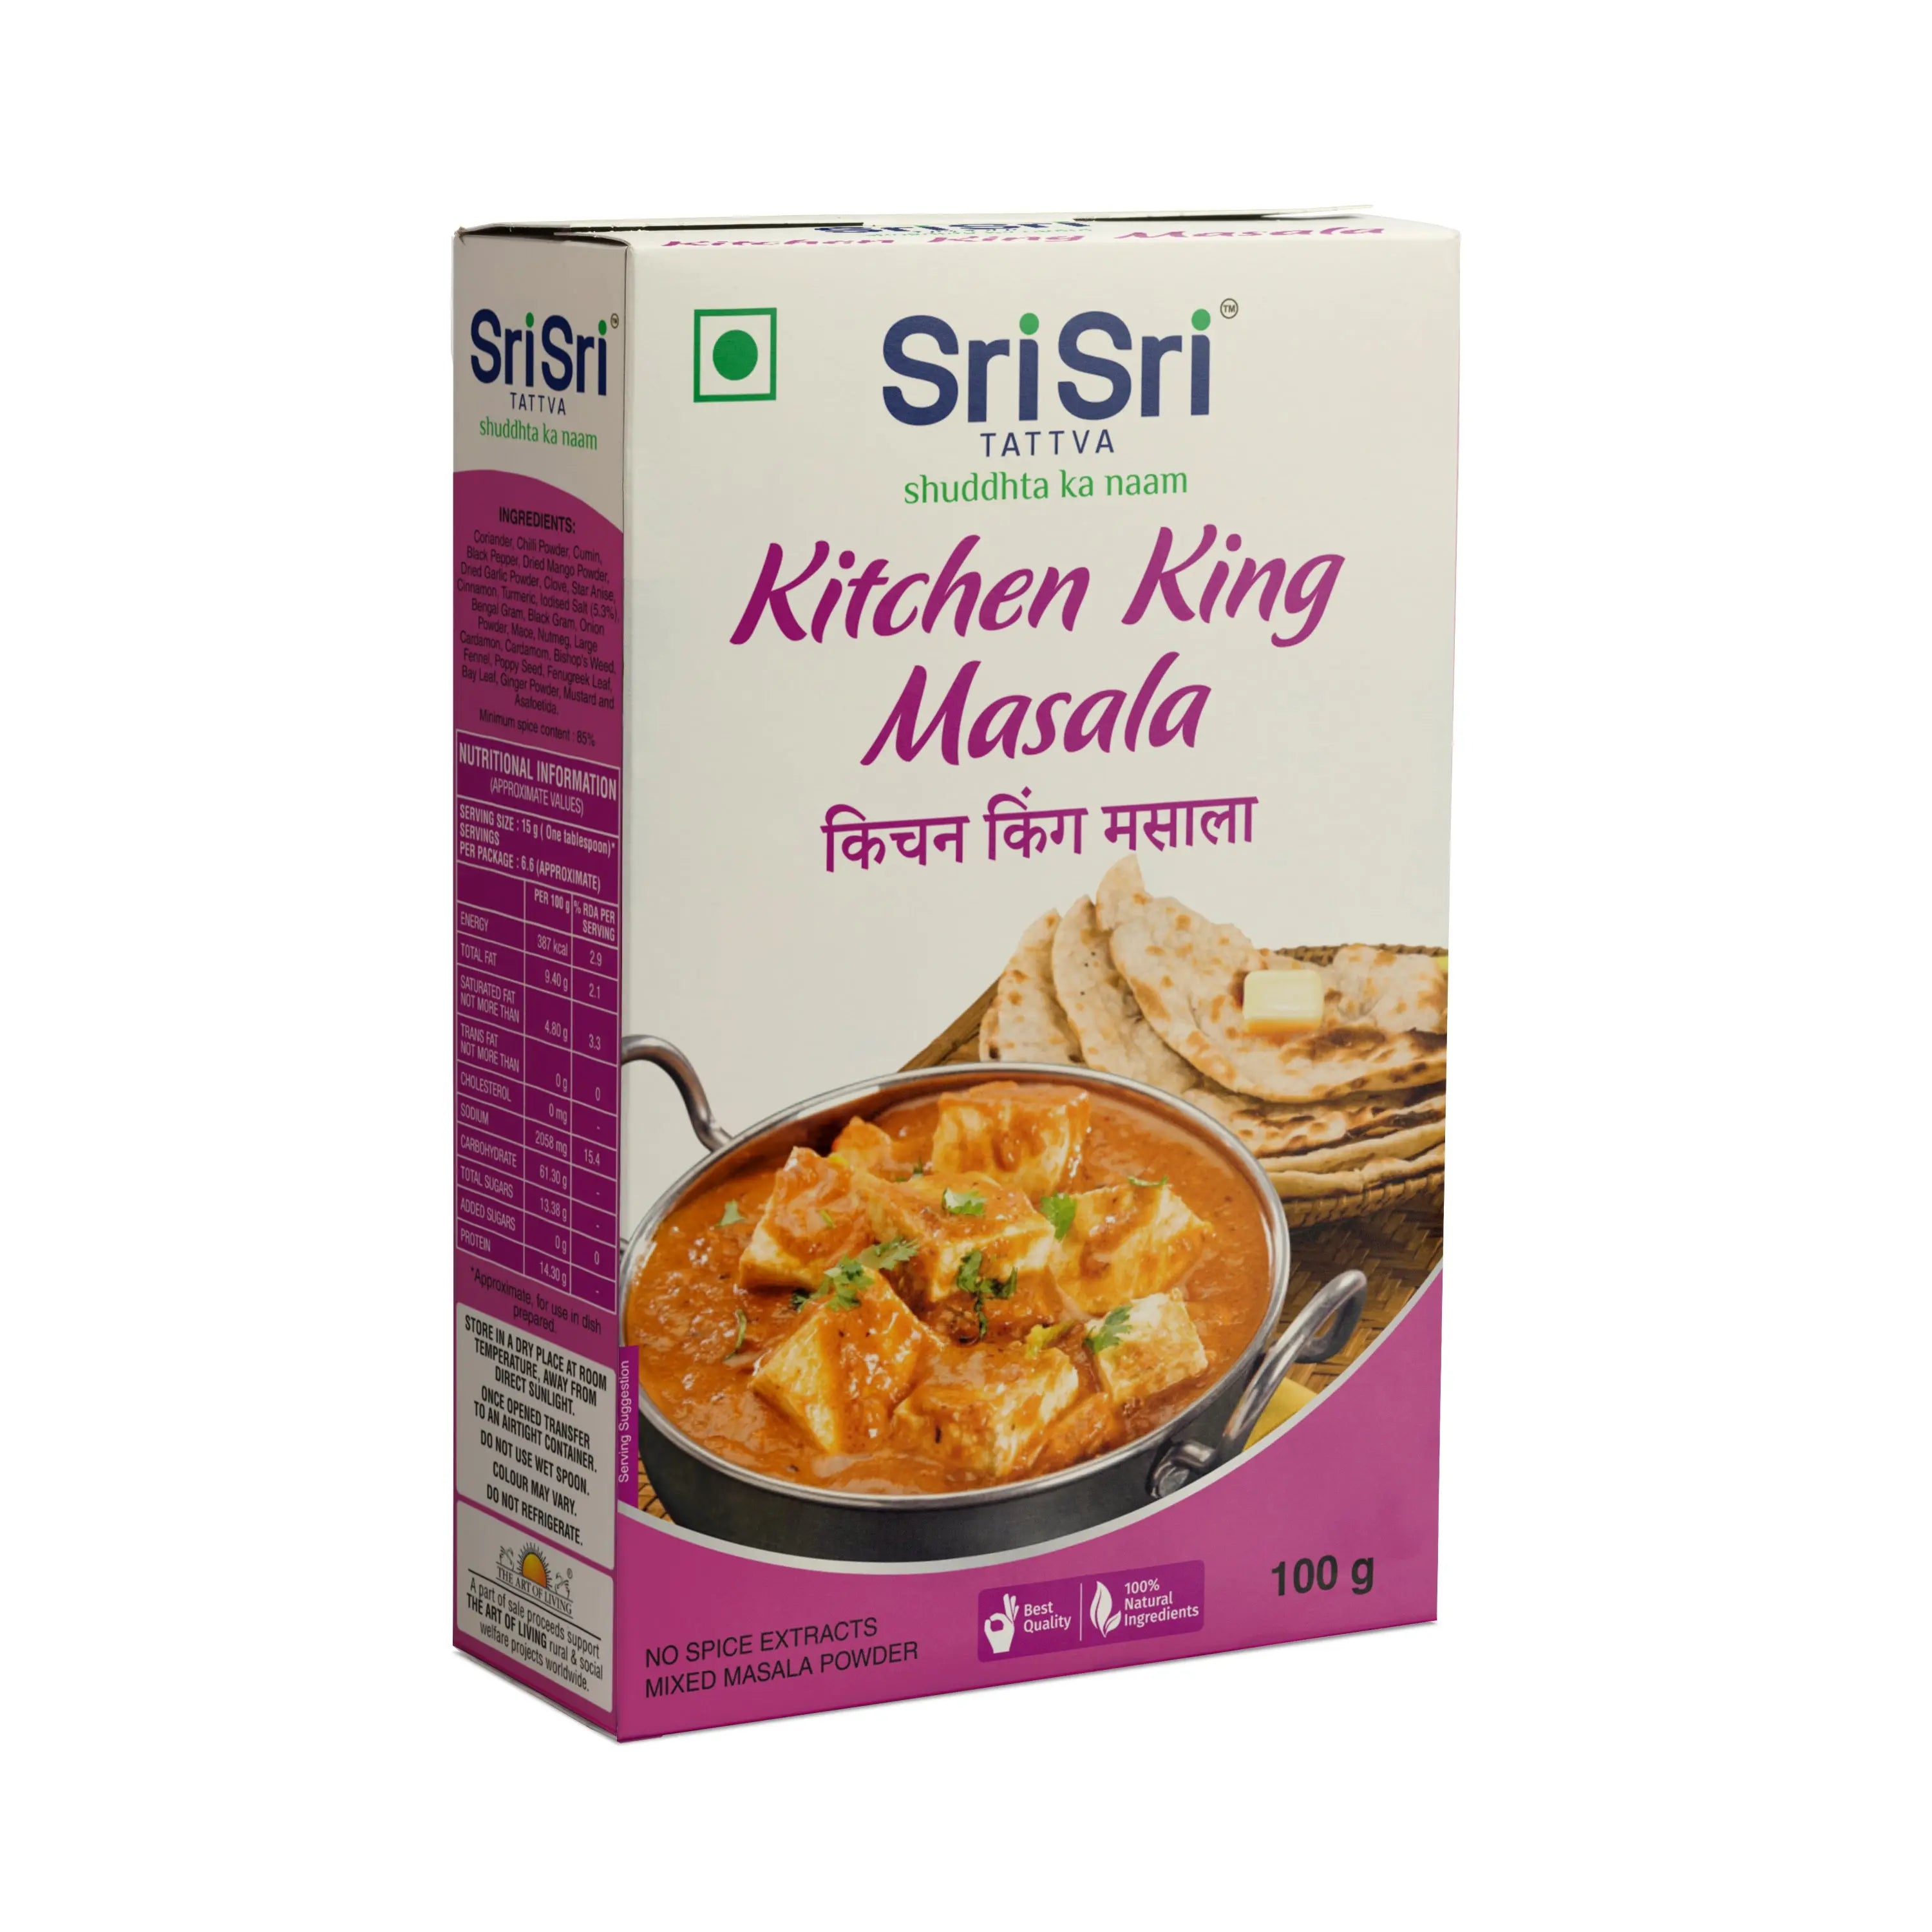 Kitchen King Masala, 100g - Sri Sri Tattva